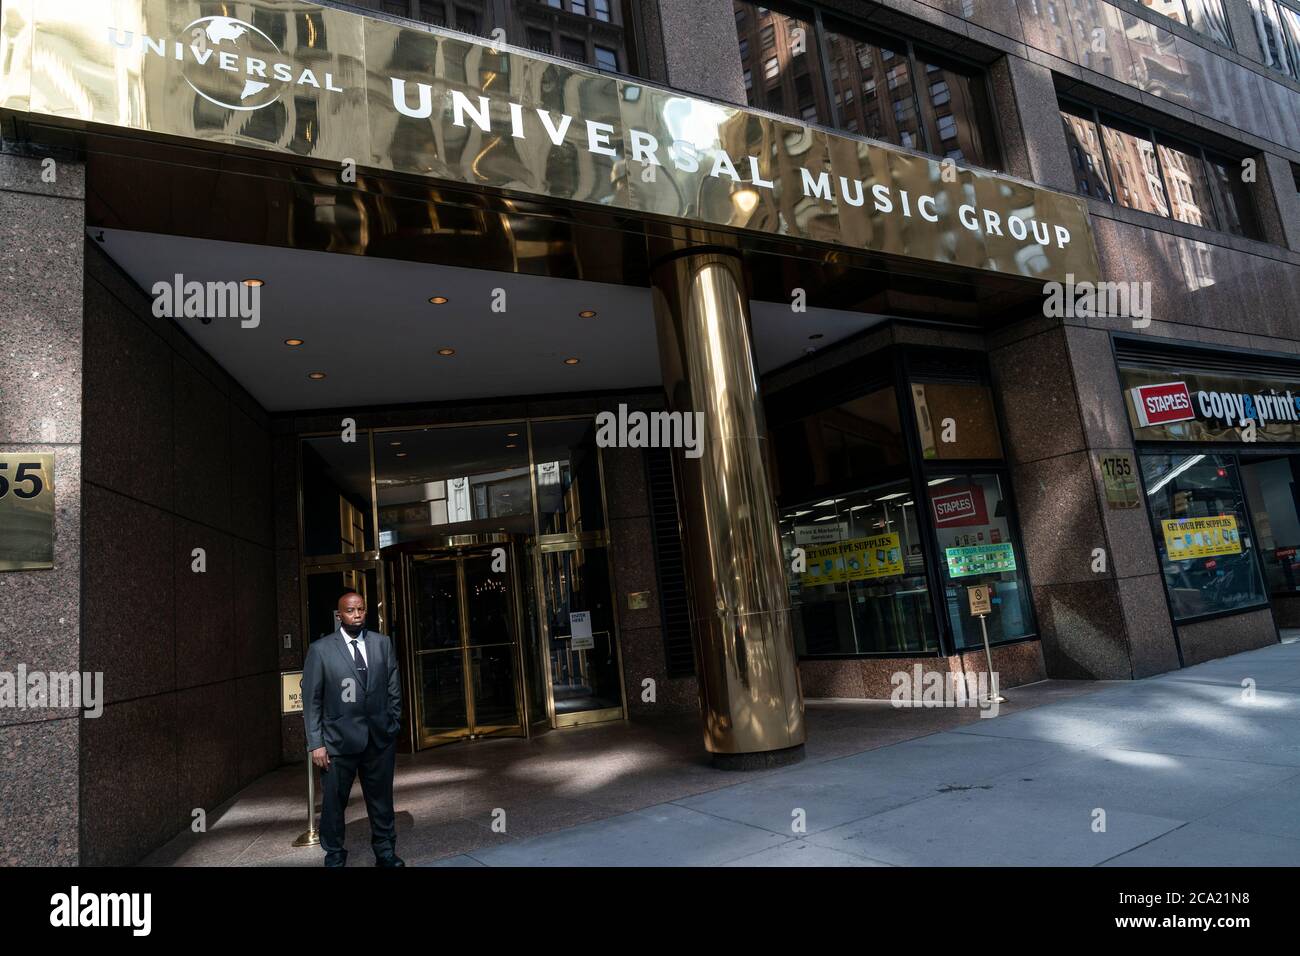 New York, NY - 3 août 2020 : vue du siège social de Universal Music Group  New York à Broadway, la société a annoncé que les employés ne retourneront  pas au bureau